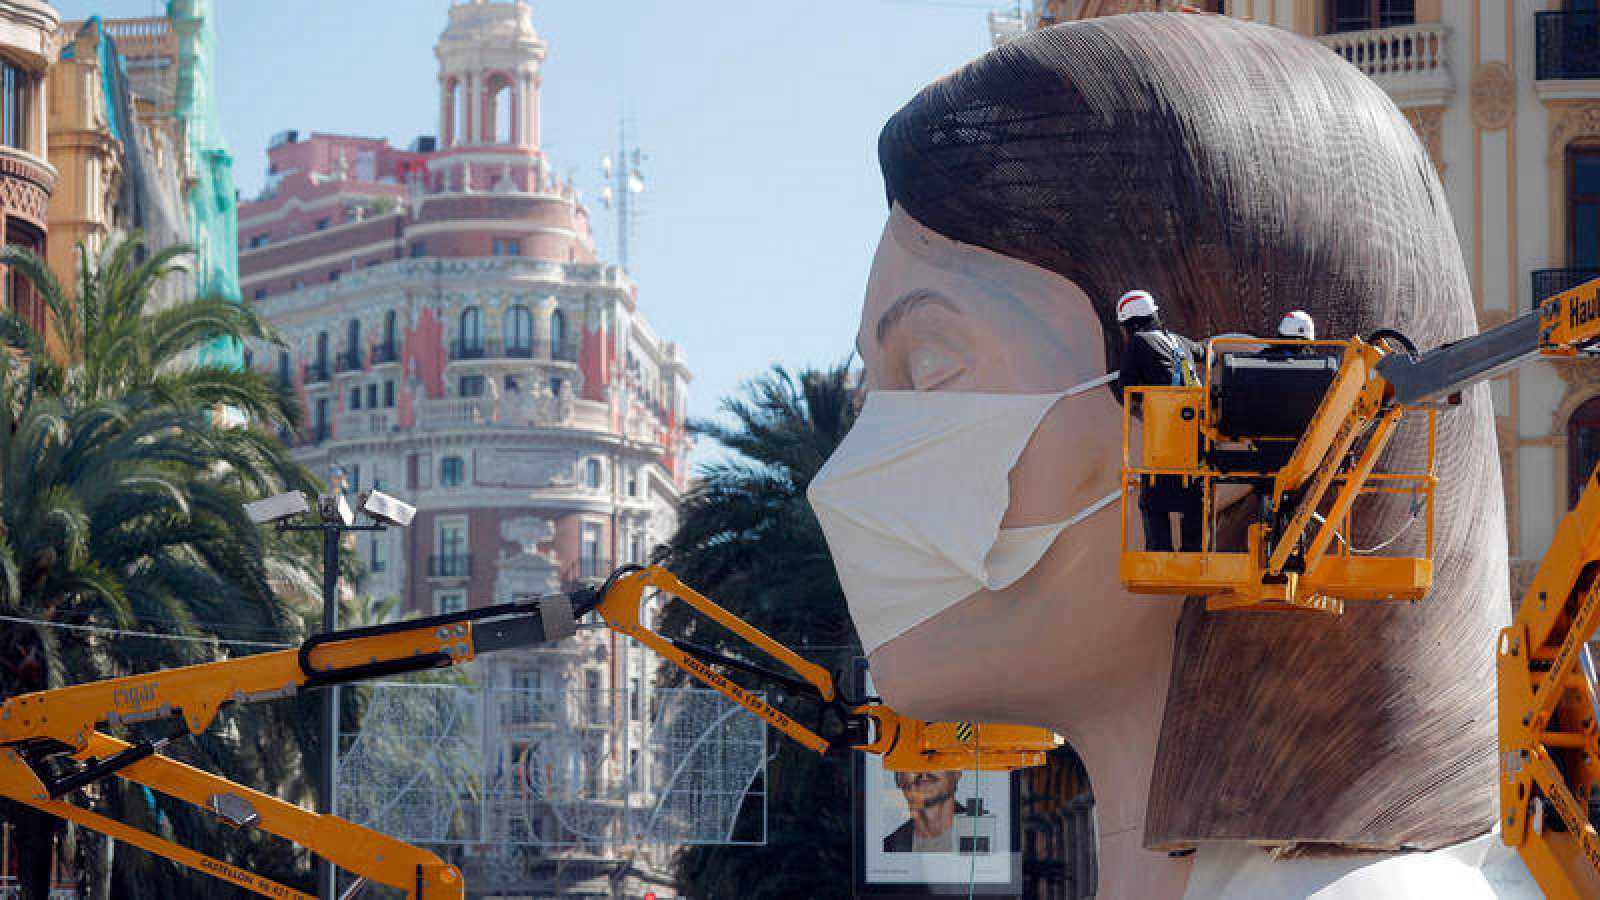 En España el coronavirus paraliza el turismo y pone en riesgo medio millón de empleos